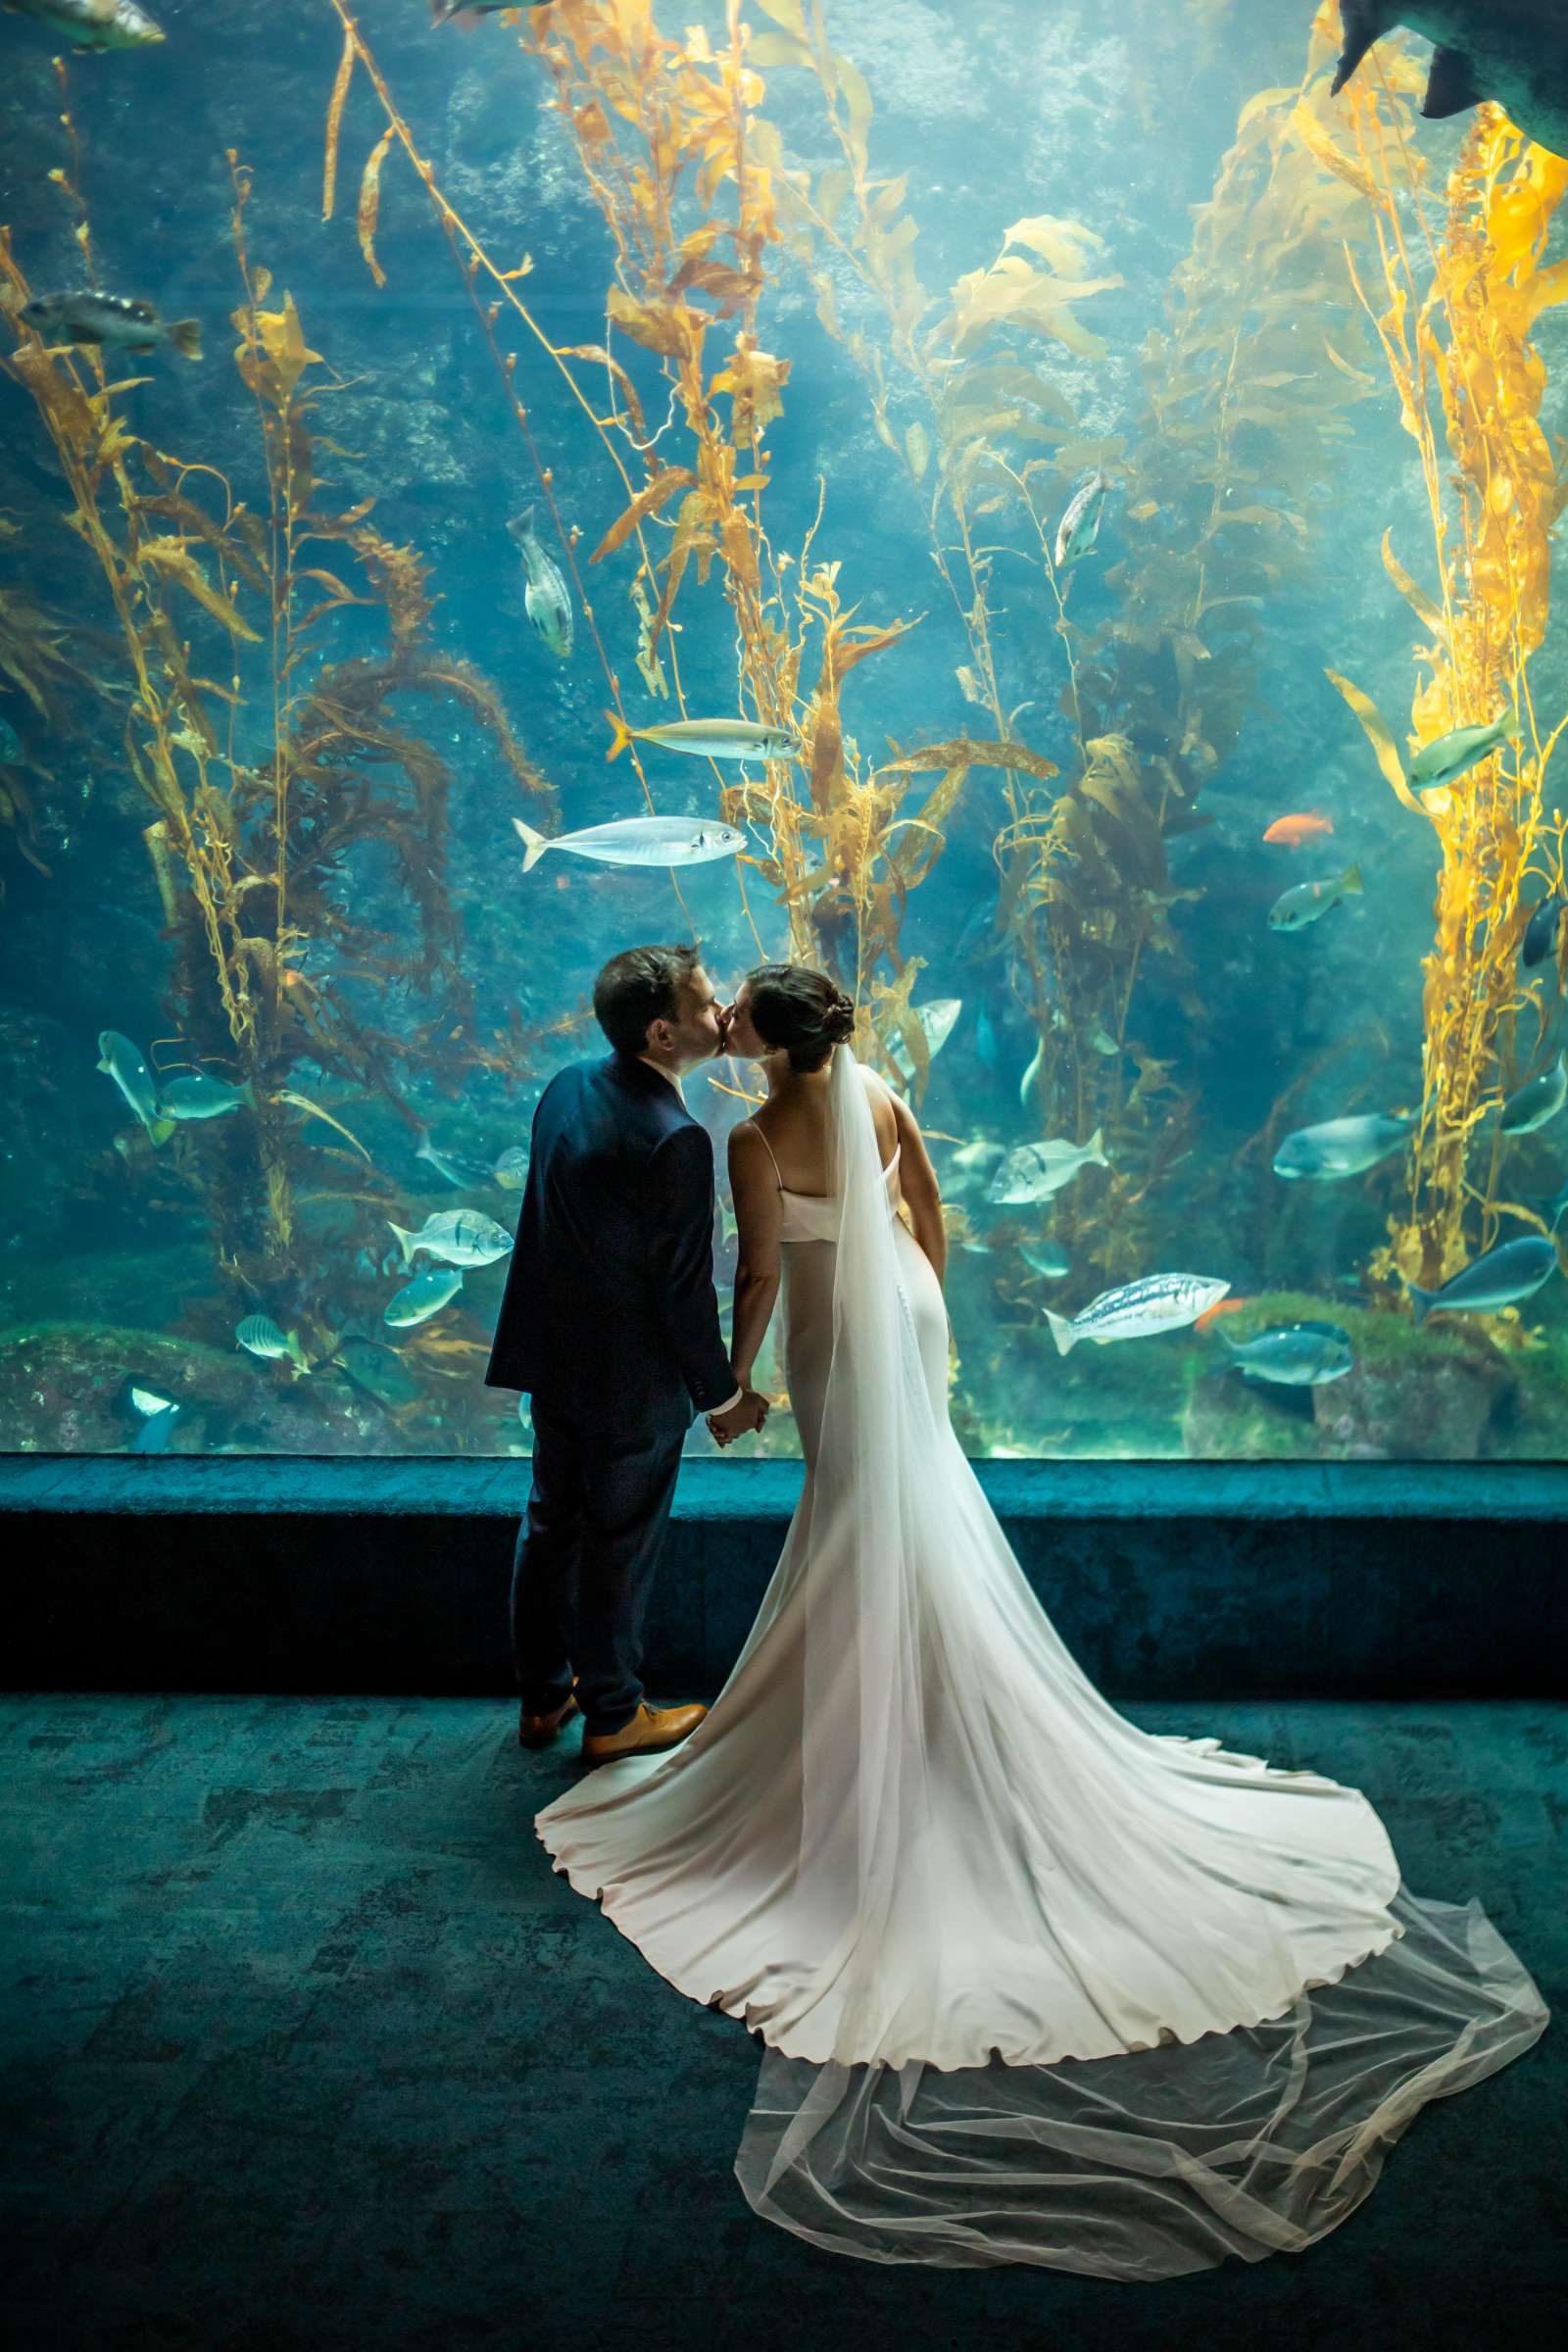 Birch Aquarium at Scripps Wedding, Susie and Bryan Wedding Photo #703154 by True Photography